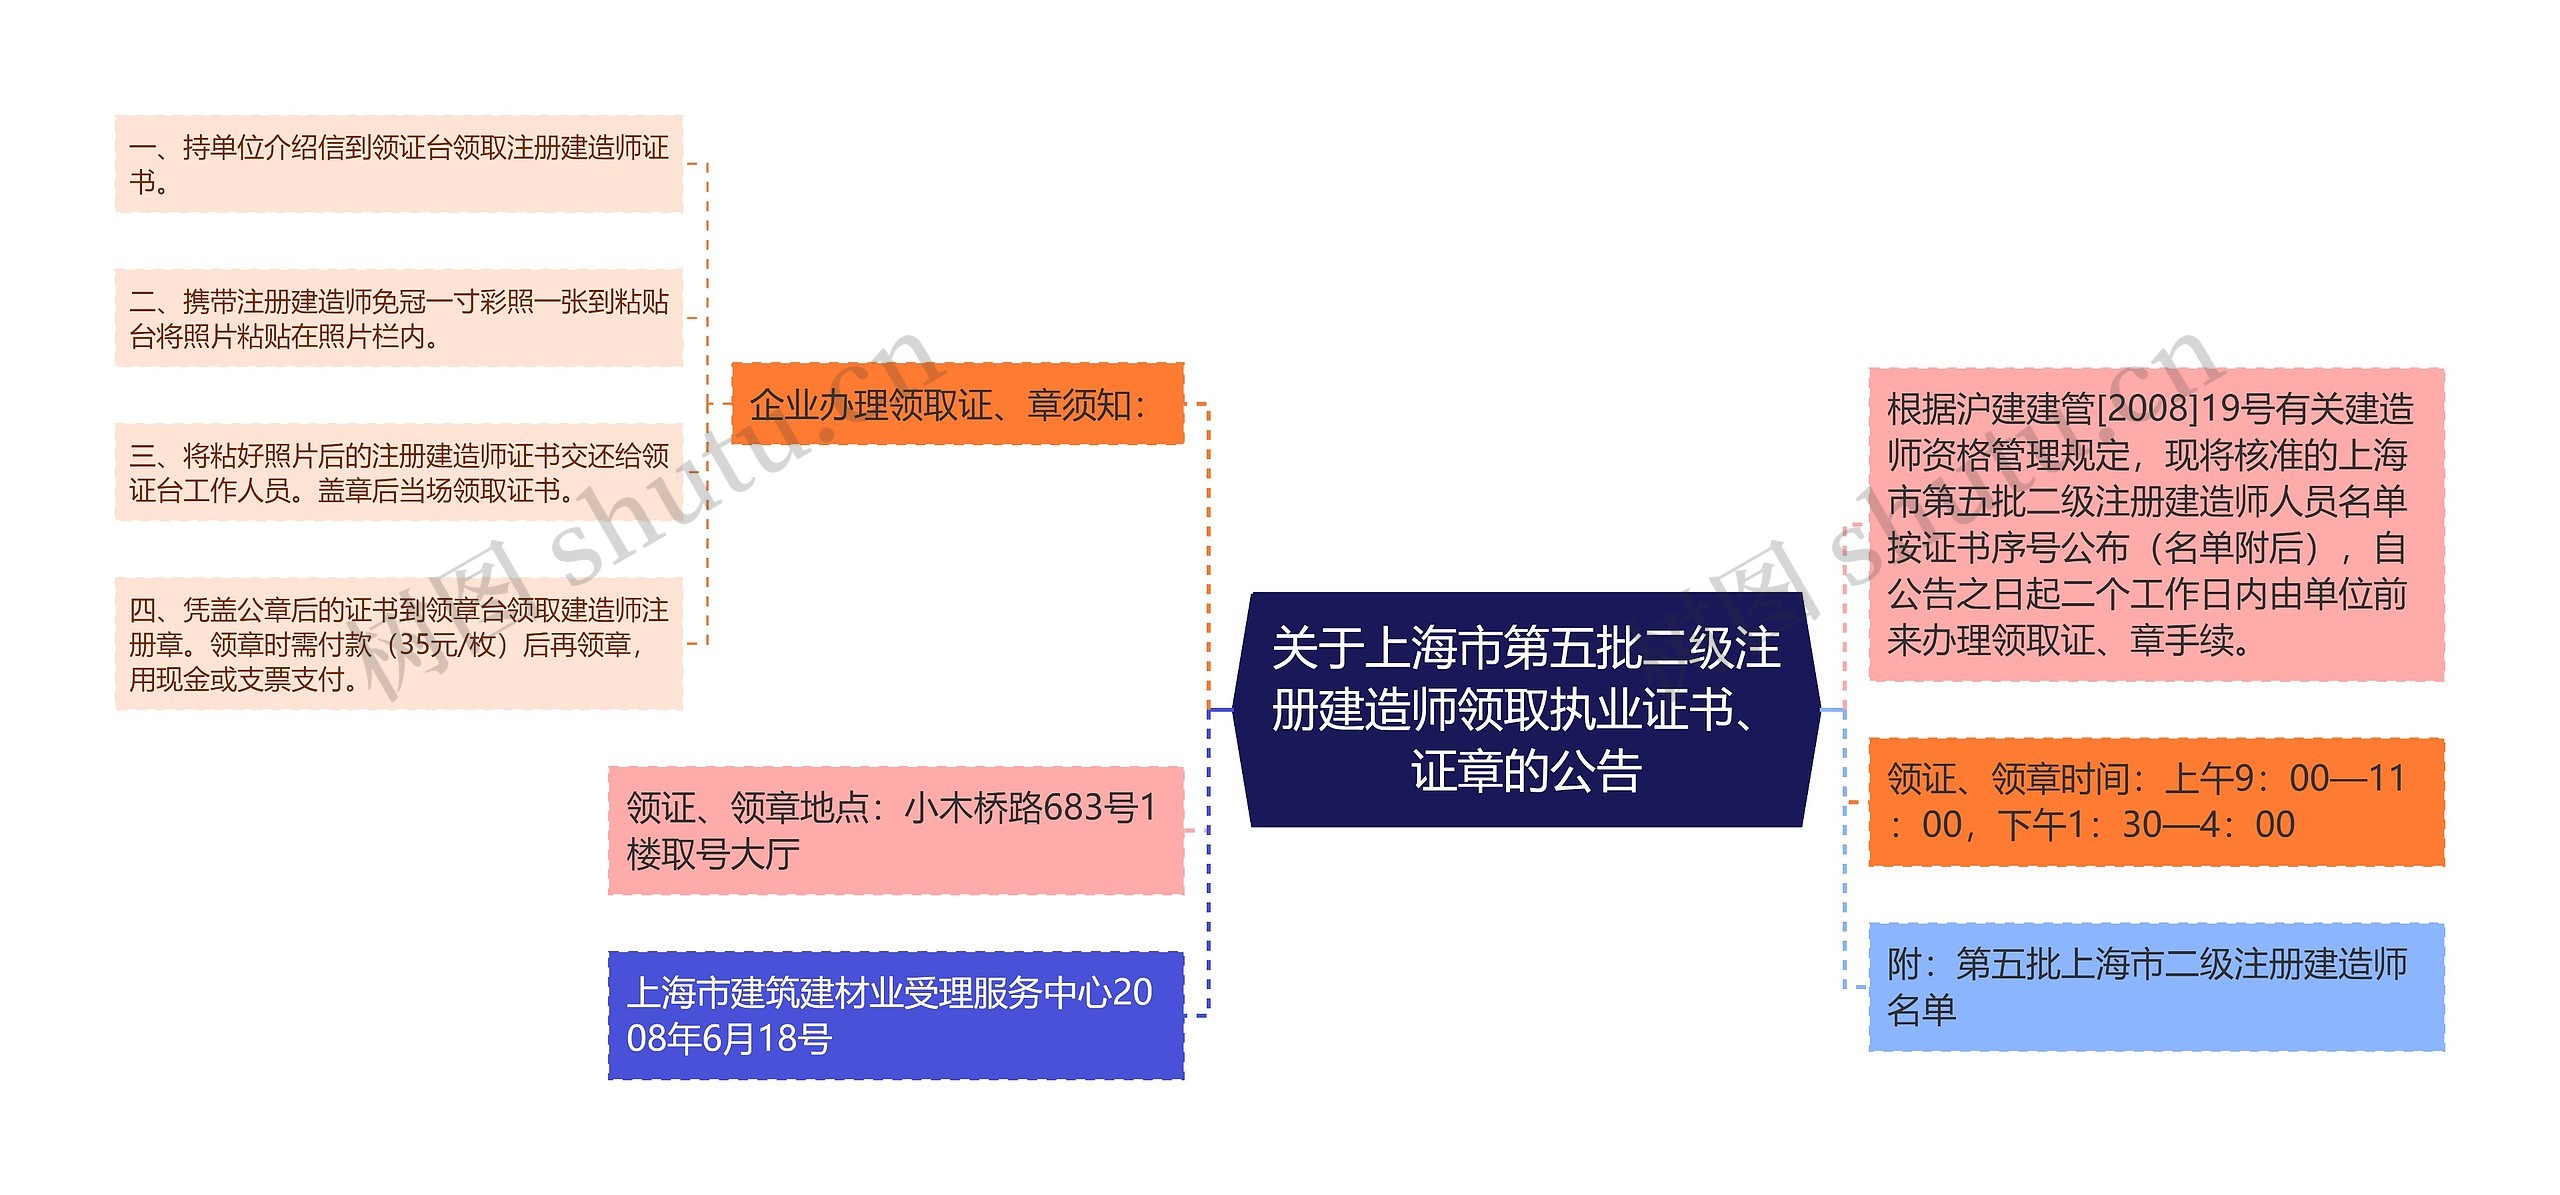 关于上海市第五批二级注册建造师领取执业证书、证章的公告思维导图